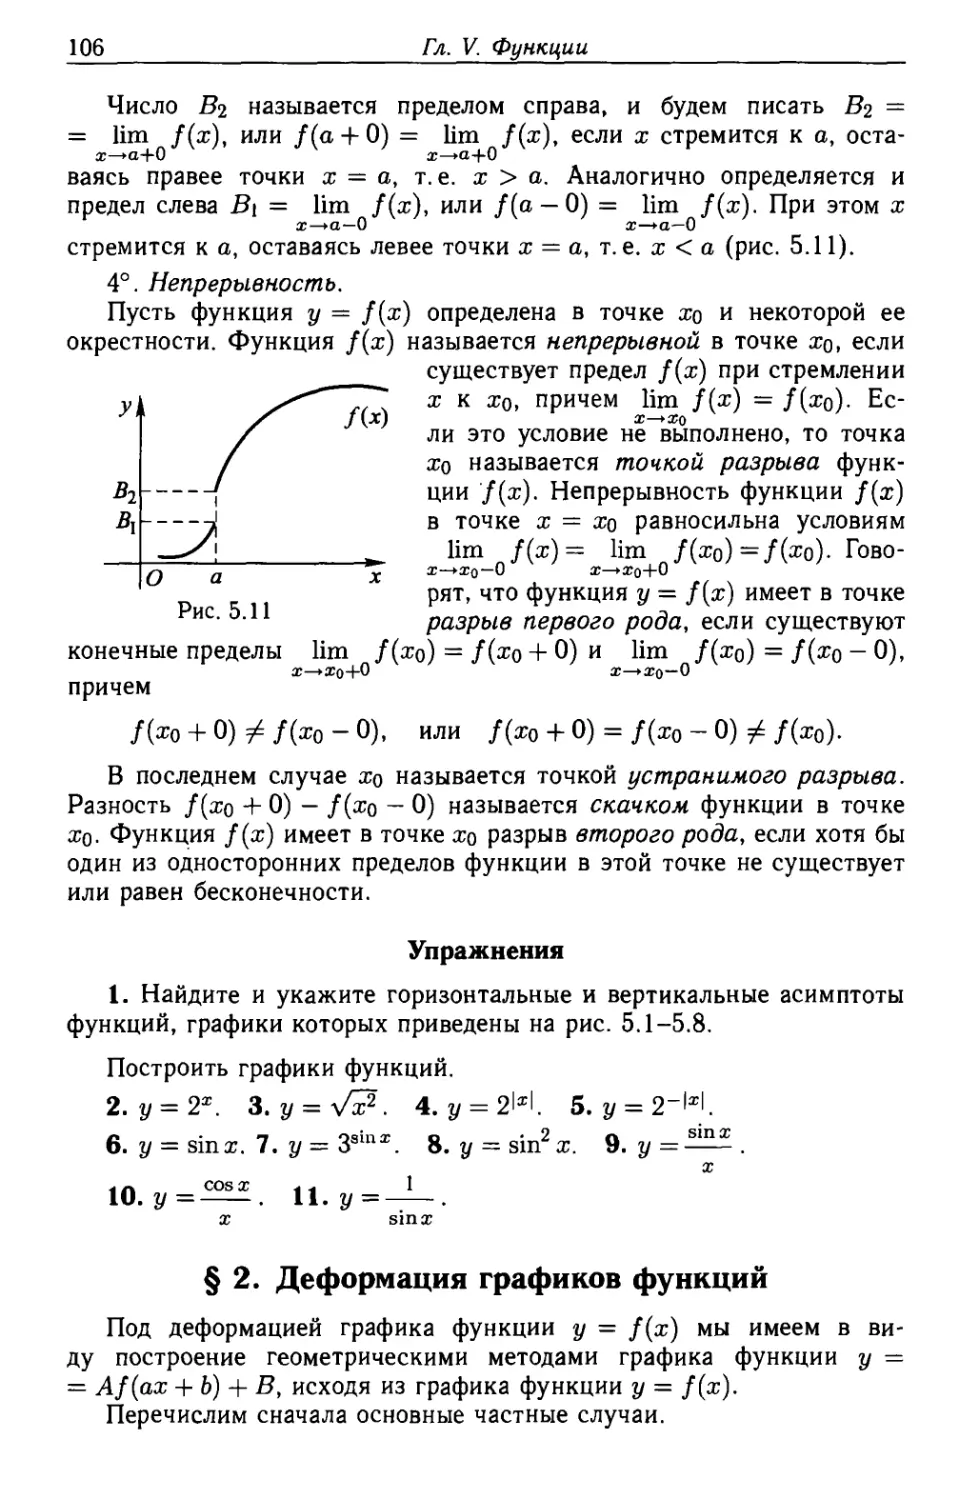 § 2. Деформация графиков функций